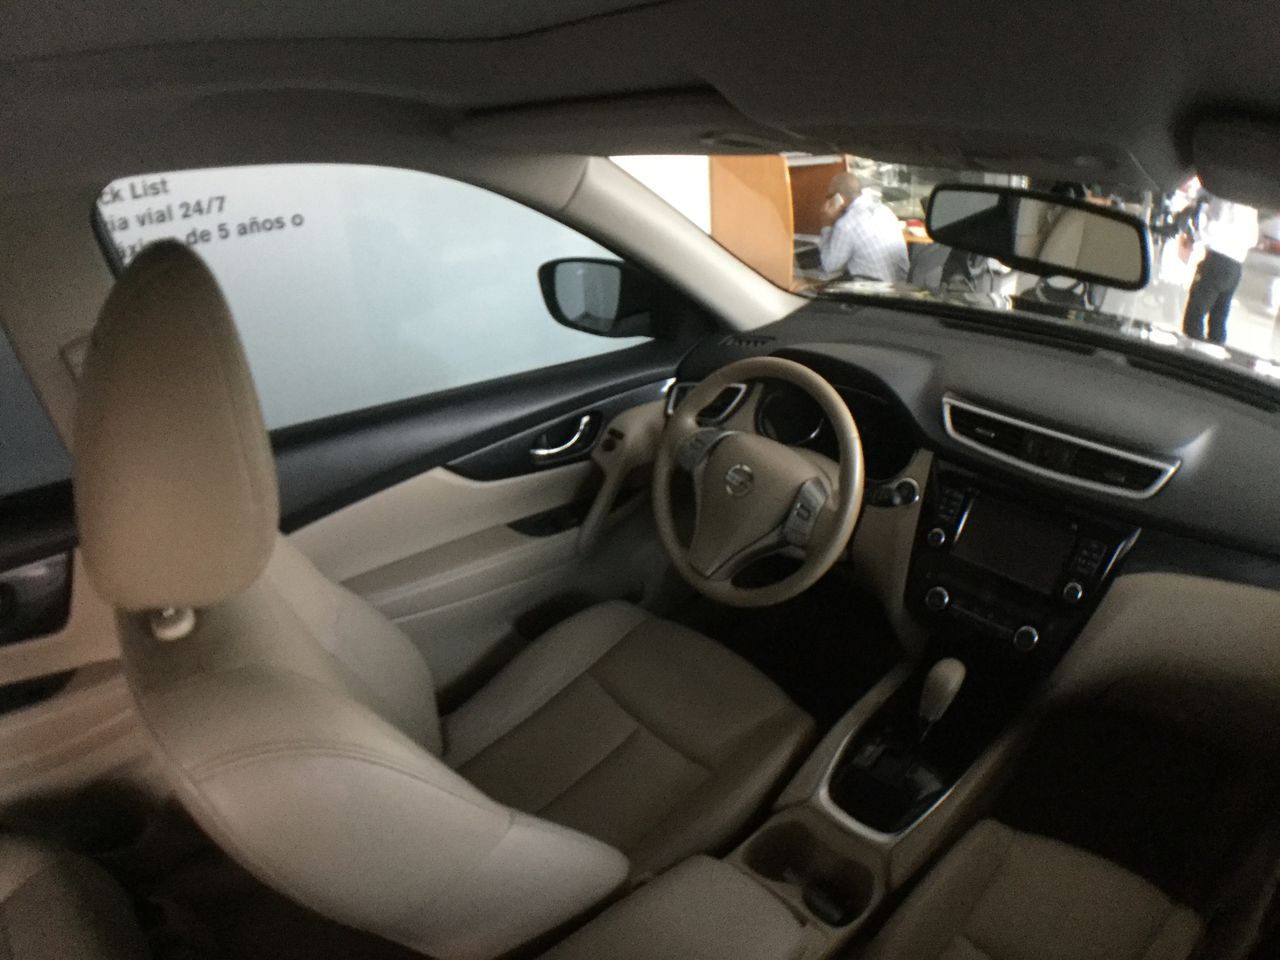 Nissan Xtrail 2016